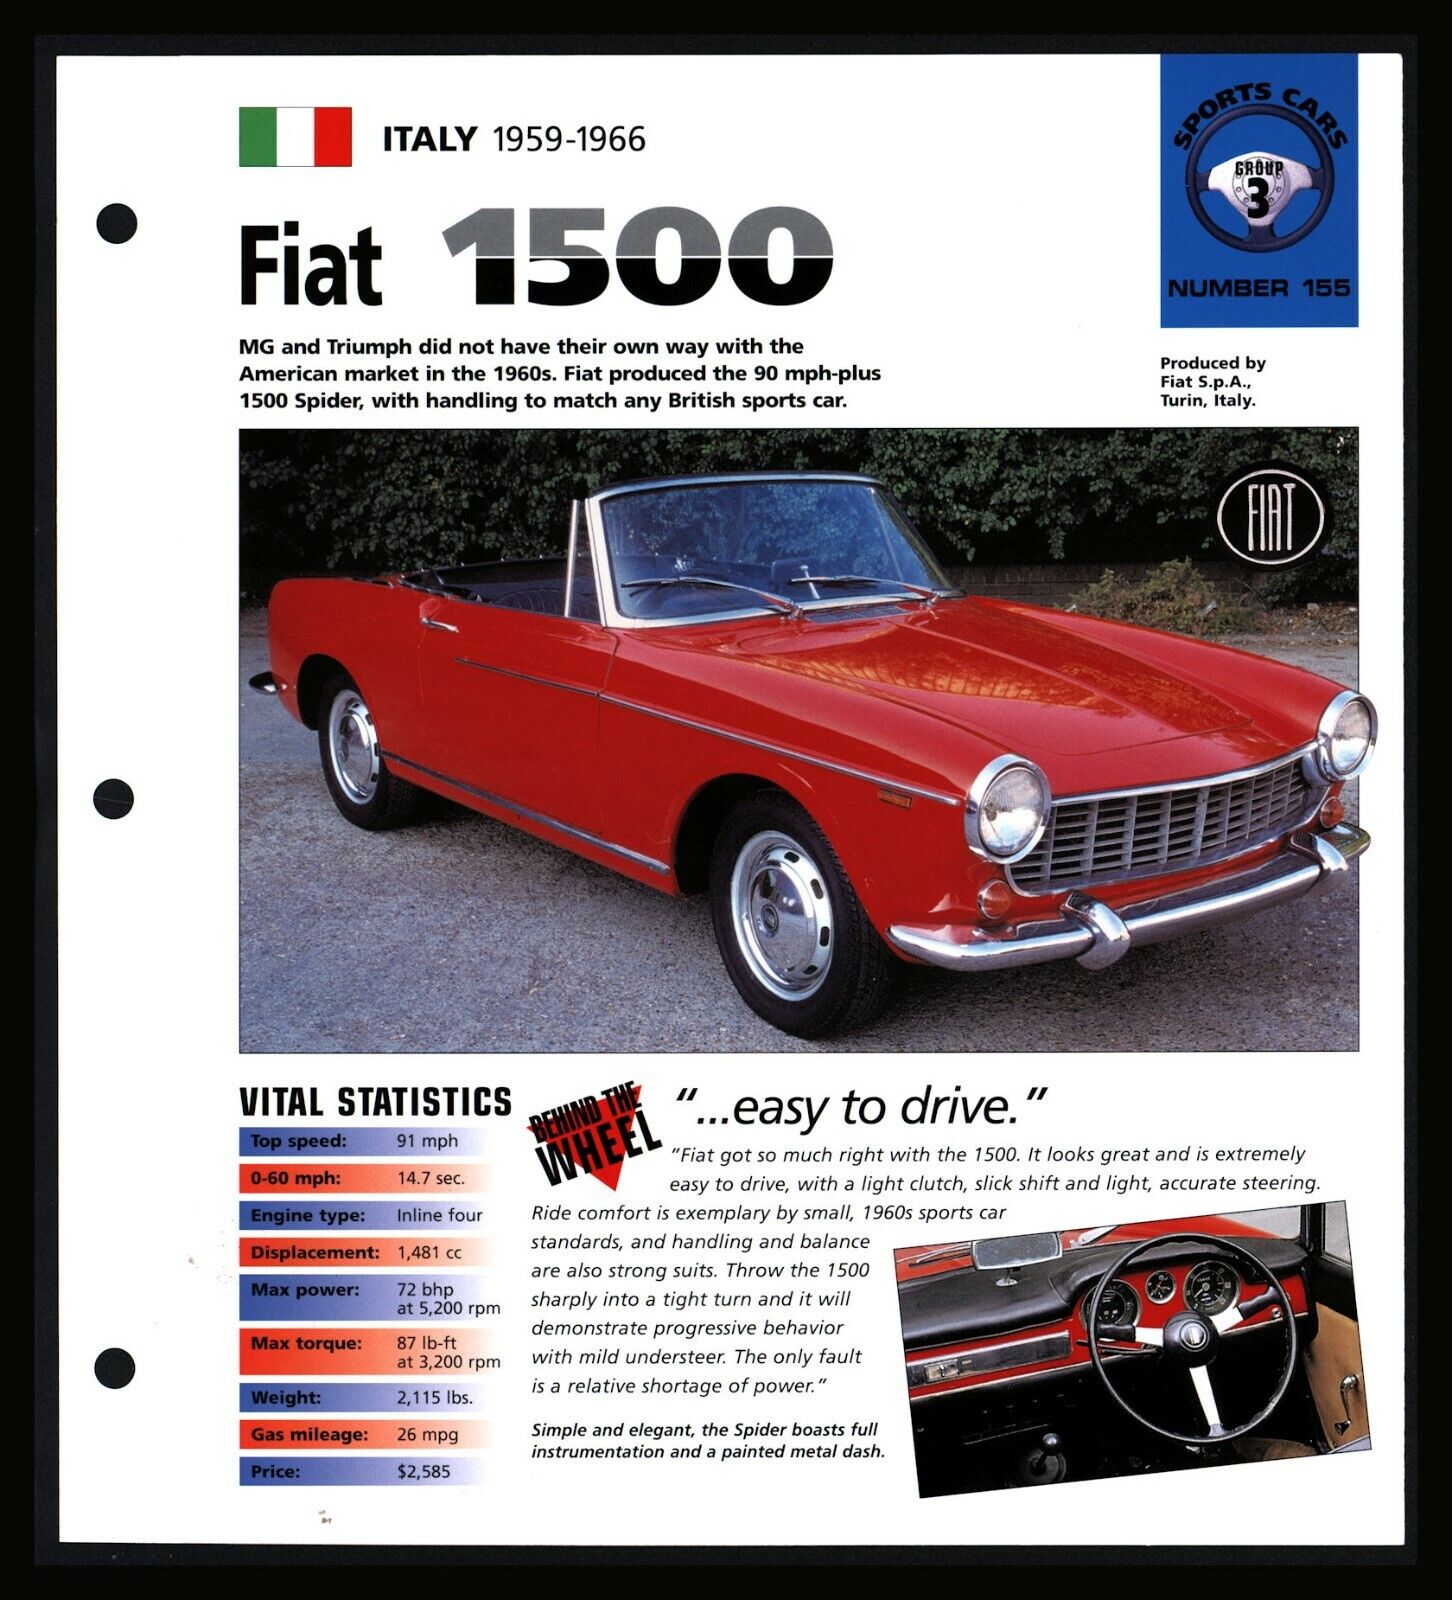 Fiat 1500 (Italy 1959-1966) Spec Sheet 1998 HOT CARS Sports Cars #3.155